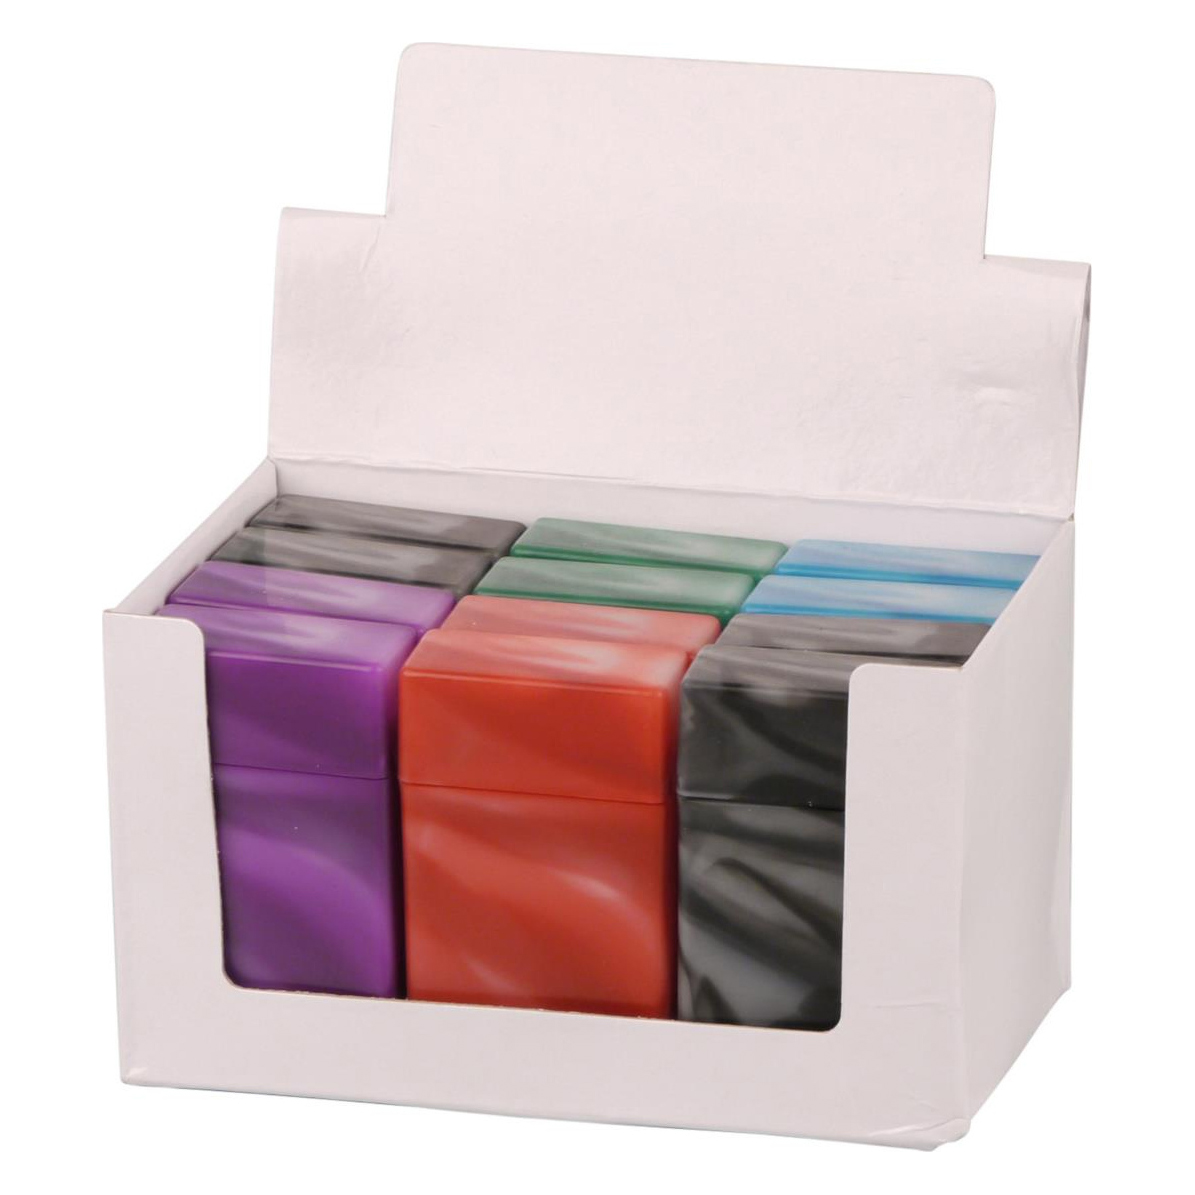 Zigarettenbox Kunststoff (12) 20er 100 mm marmoriert 6 Farben sortiert